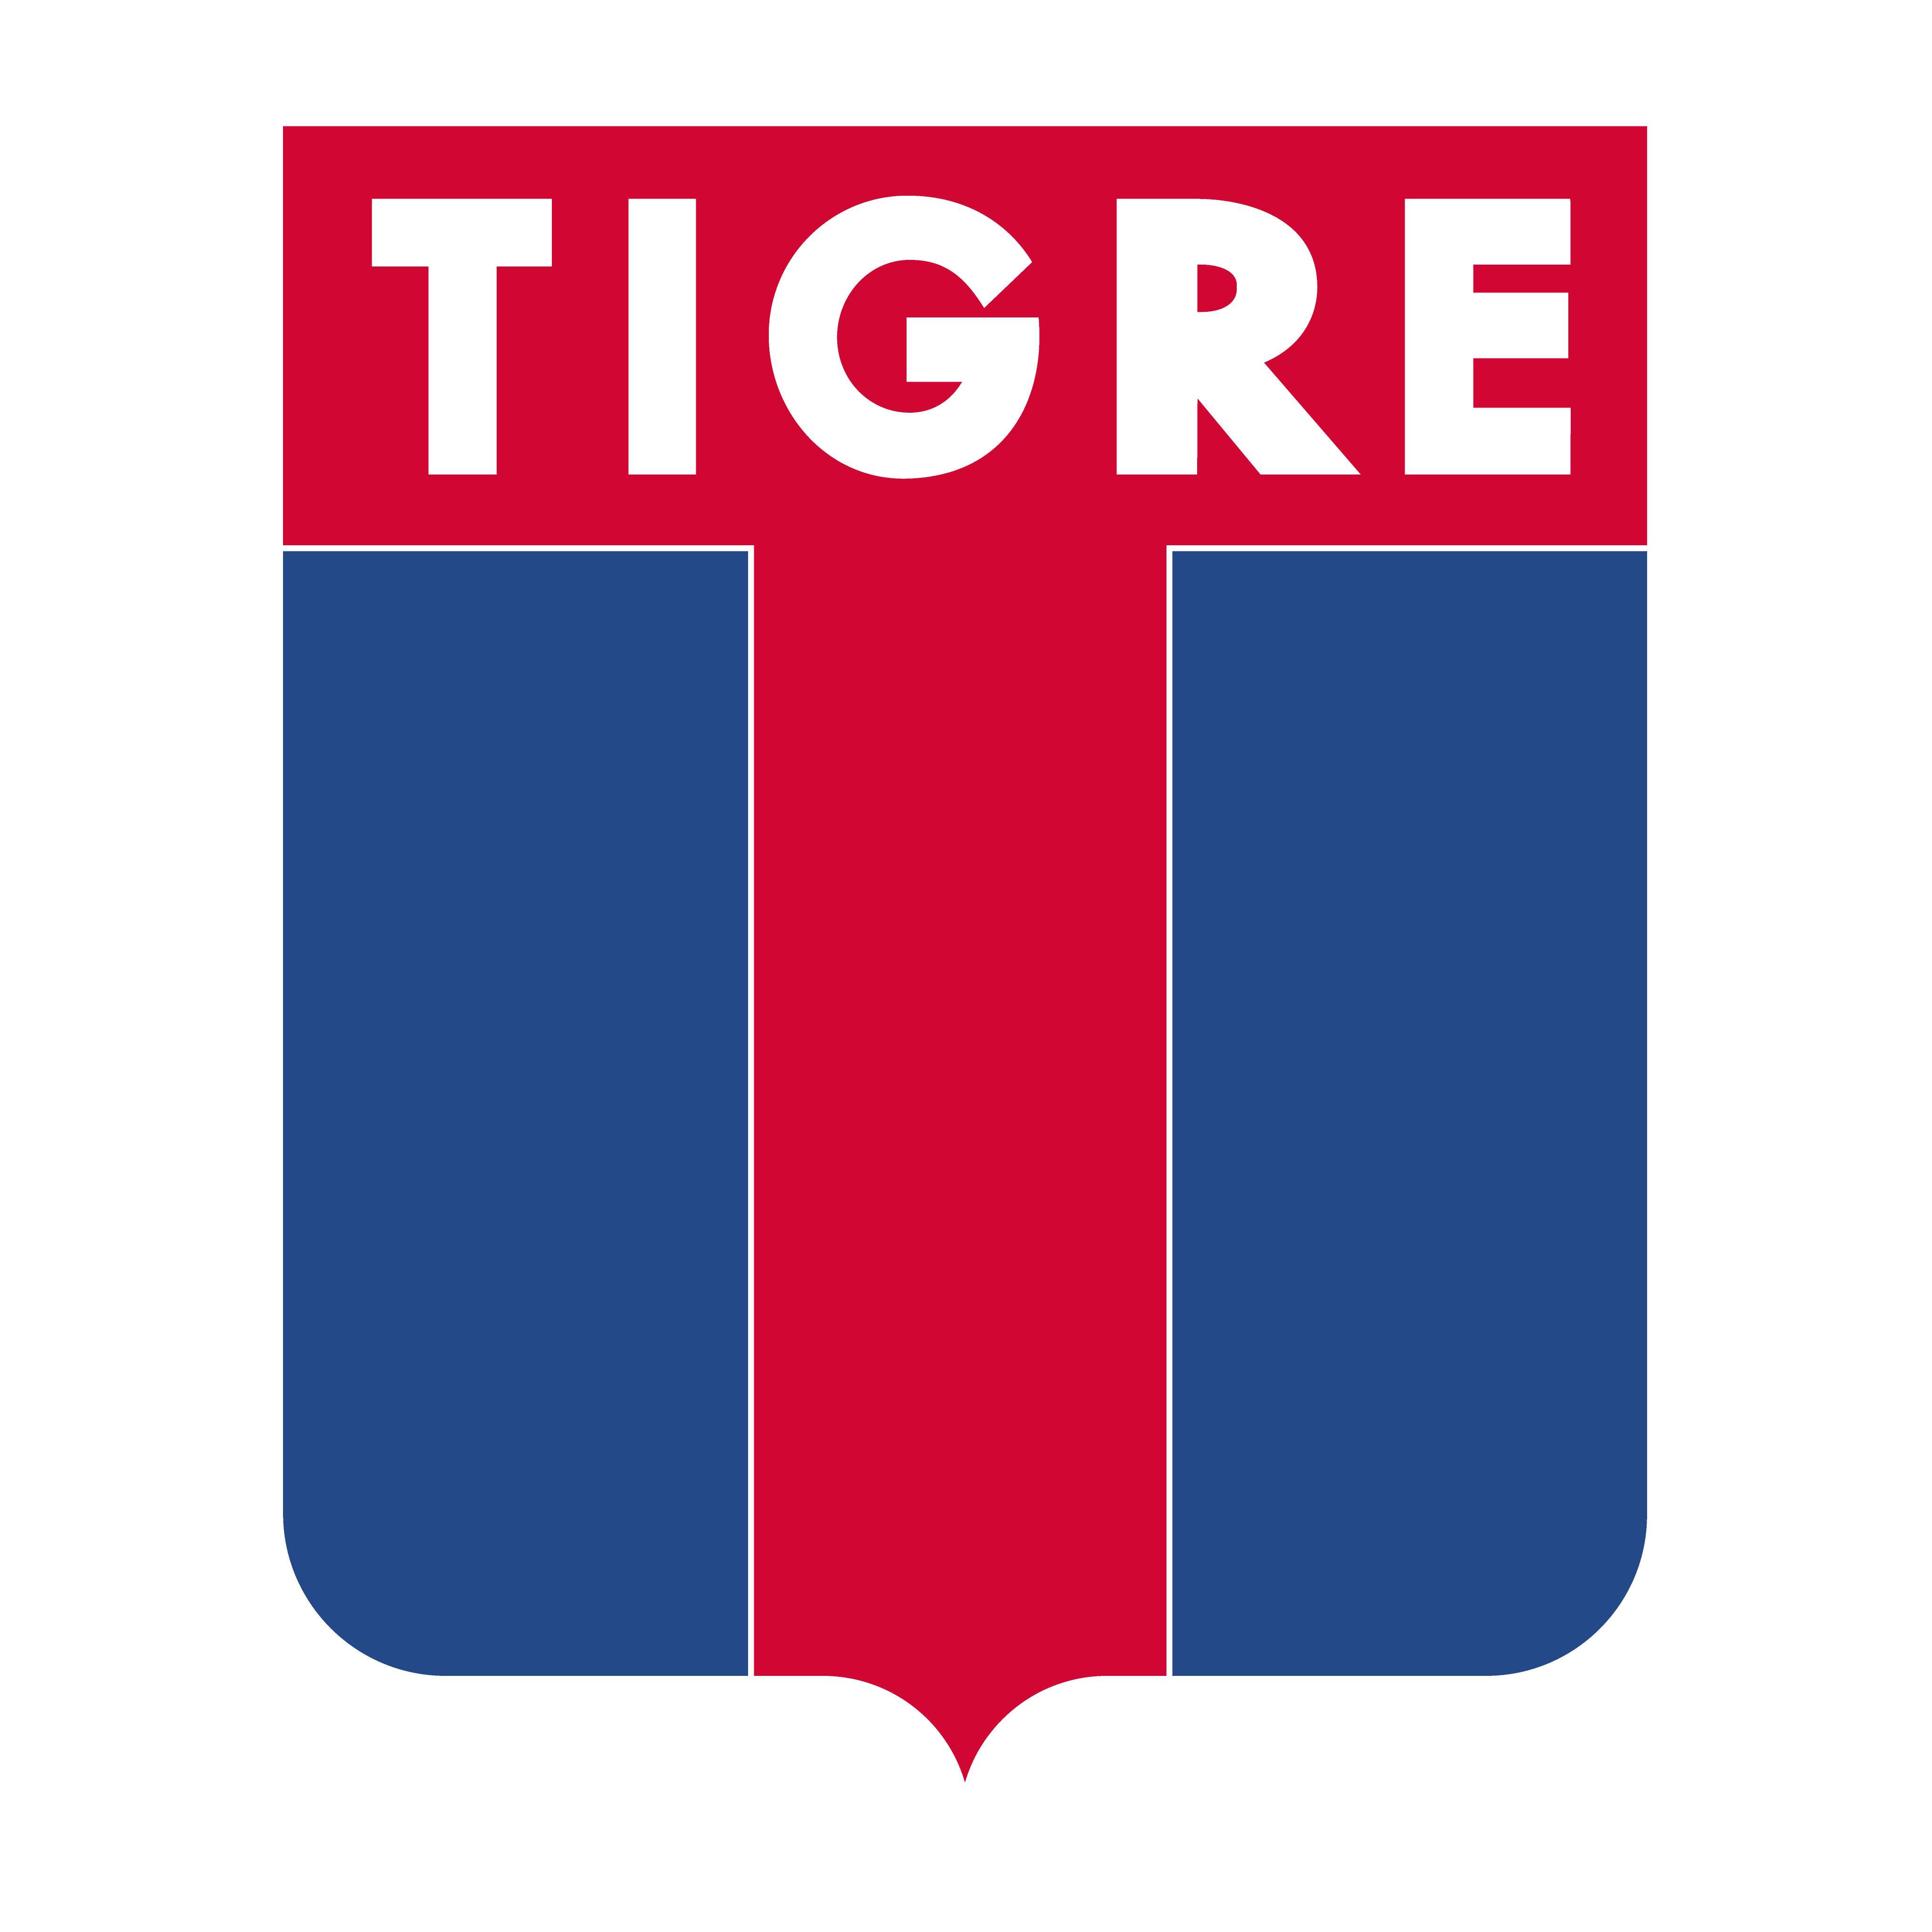 logo tigre